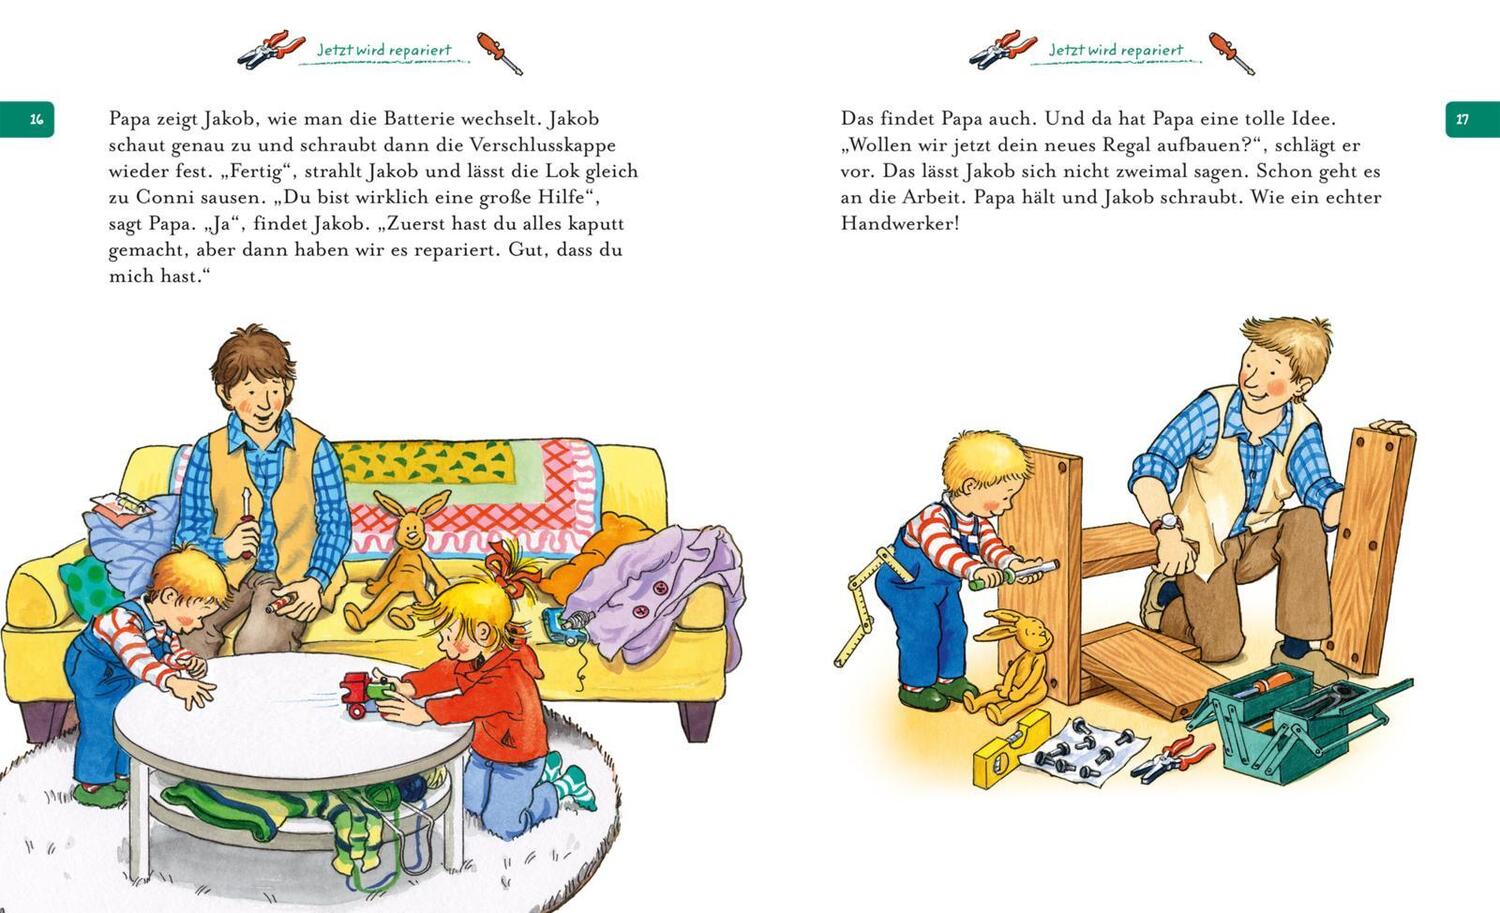 Bild: 9783551170187 | Mein erstes Vorlesebuch für kleine starke Kinder | Sandra Grimm | Buch